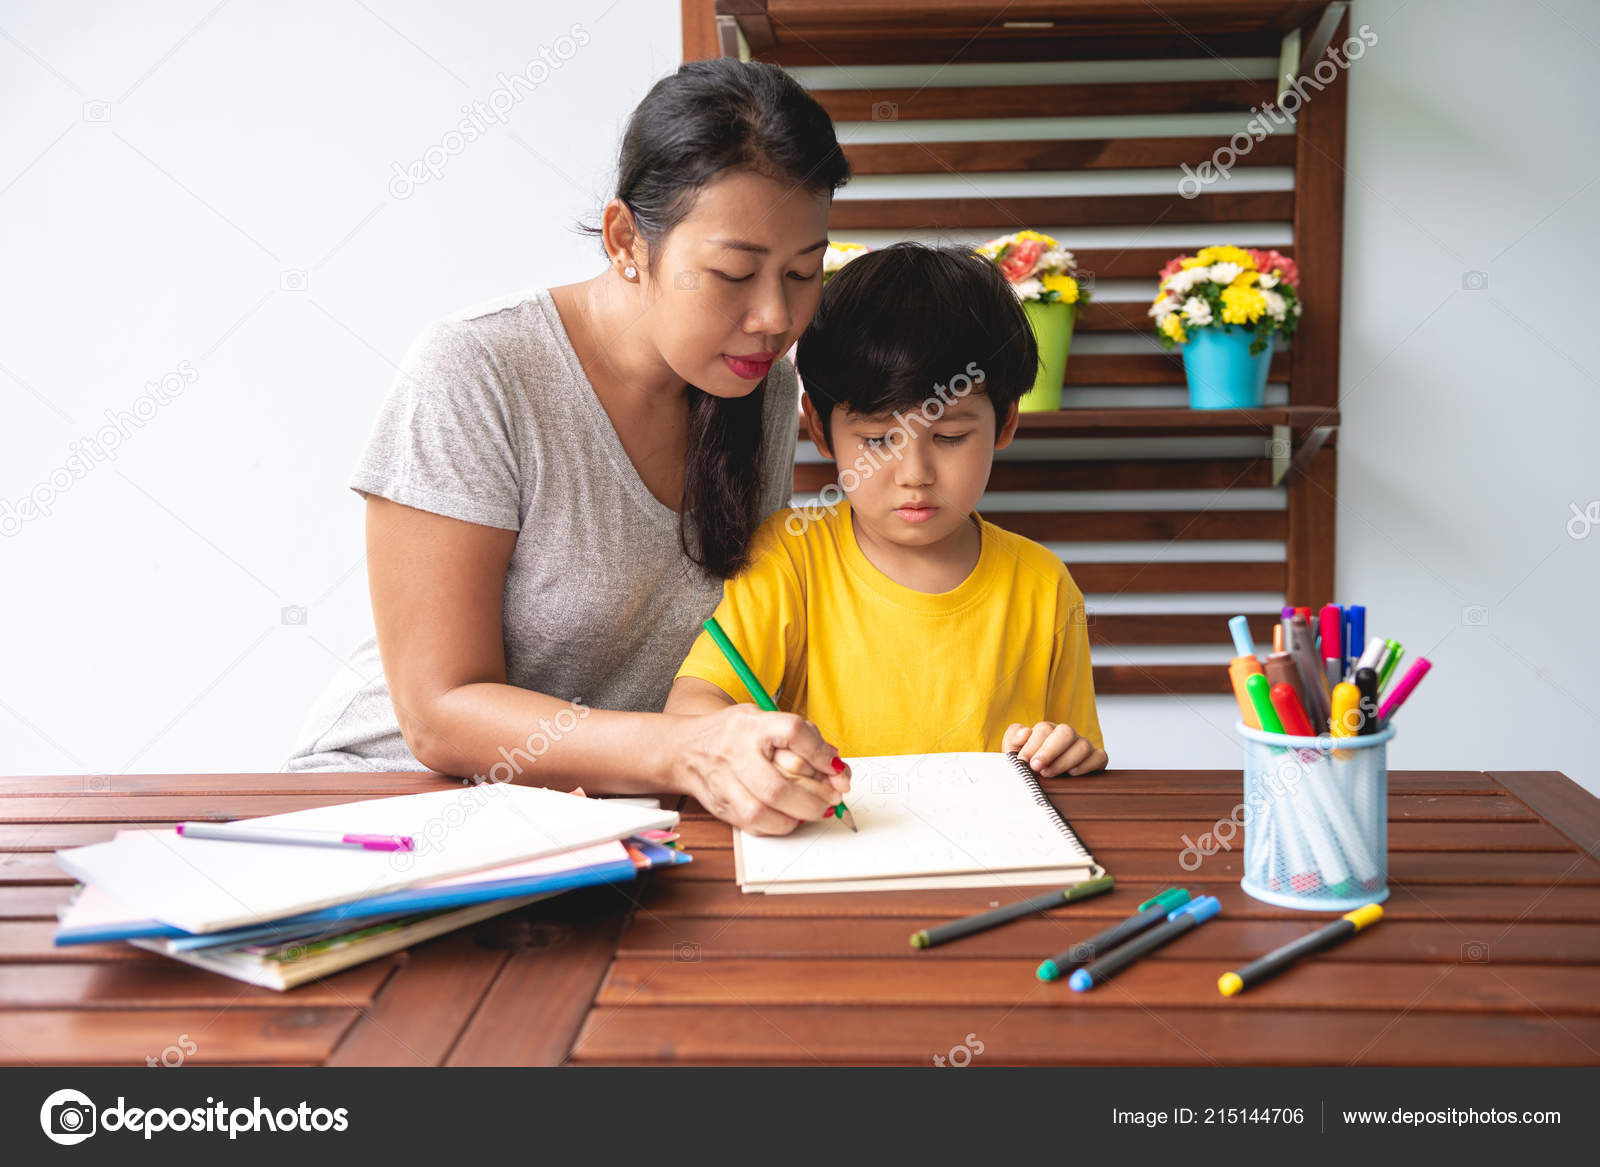 Children Homework Young Mixed Race Boy Doing Homework - Learning - HD Wallpaper 